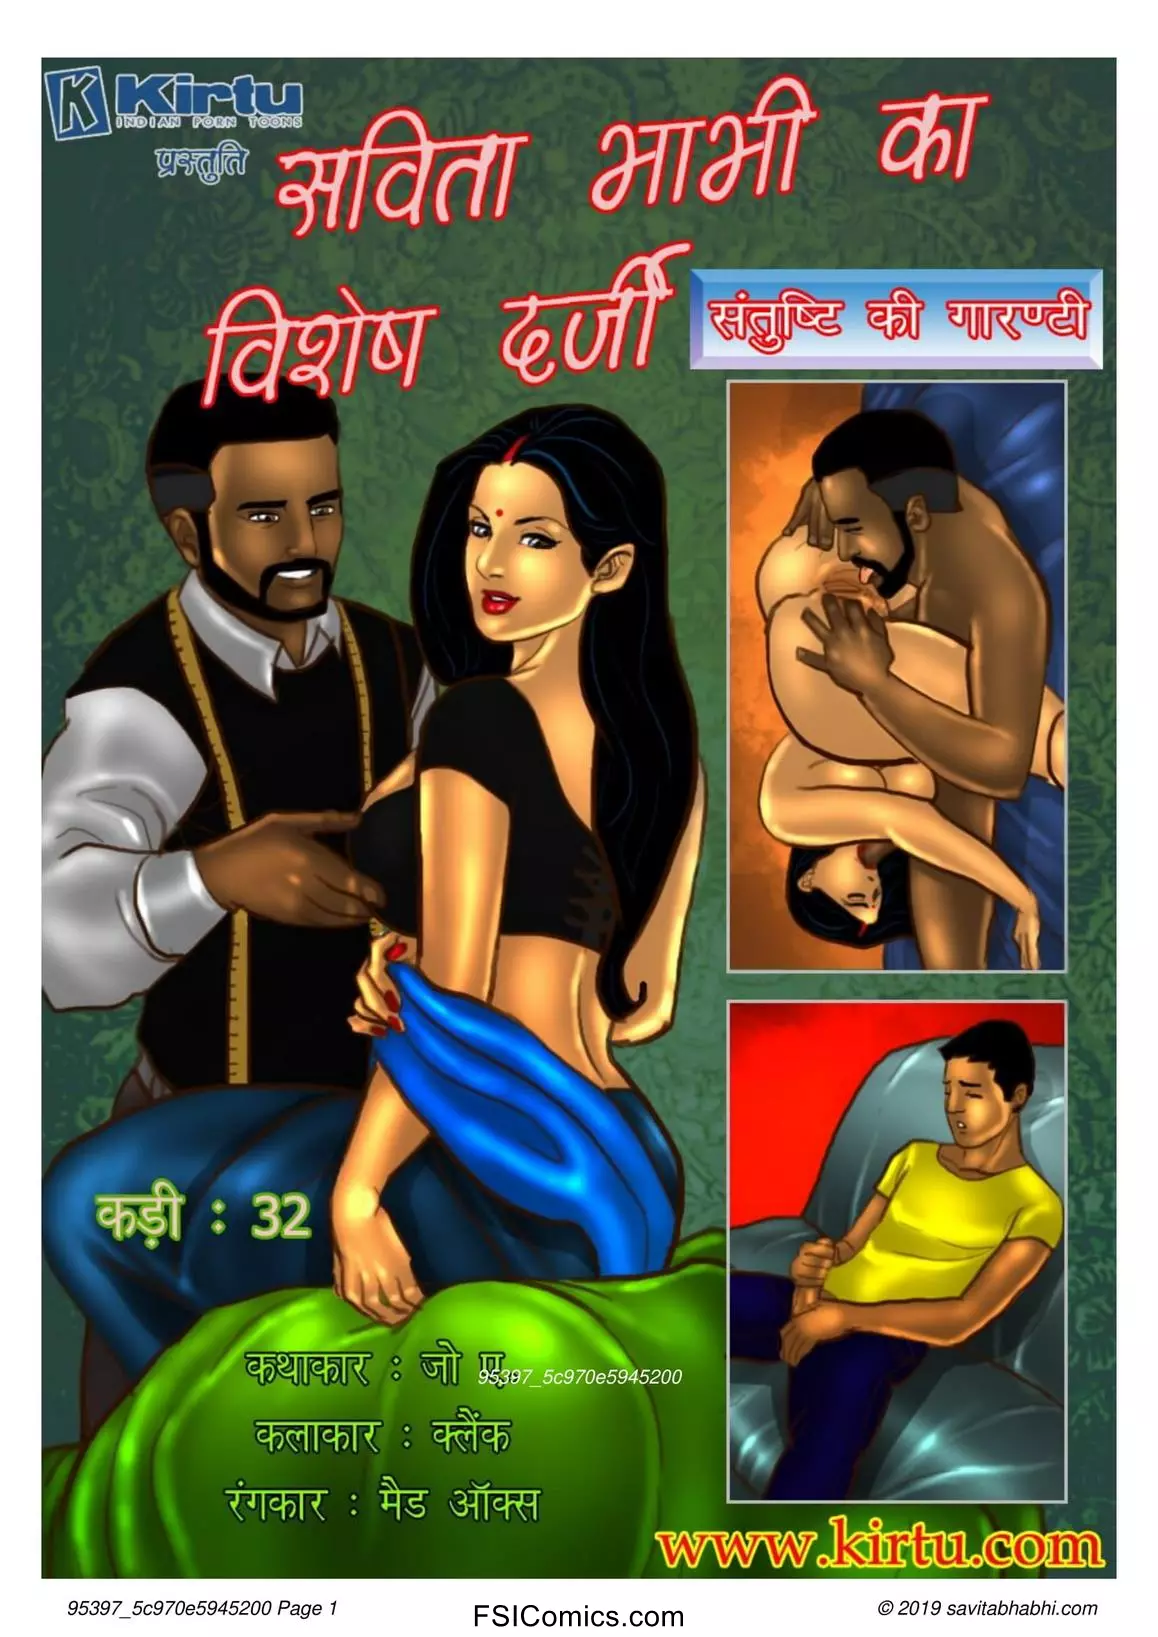 Savita Bhabhi Episode 32 Hindi – Savita Bhabhi Ka Vishesh Darji (सविता भाभी का विशेष दर्जी!!) - 27 - Fsicomics